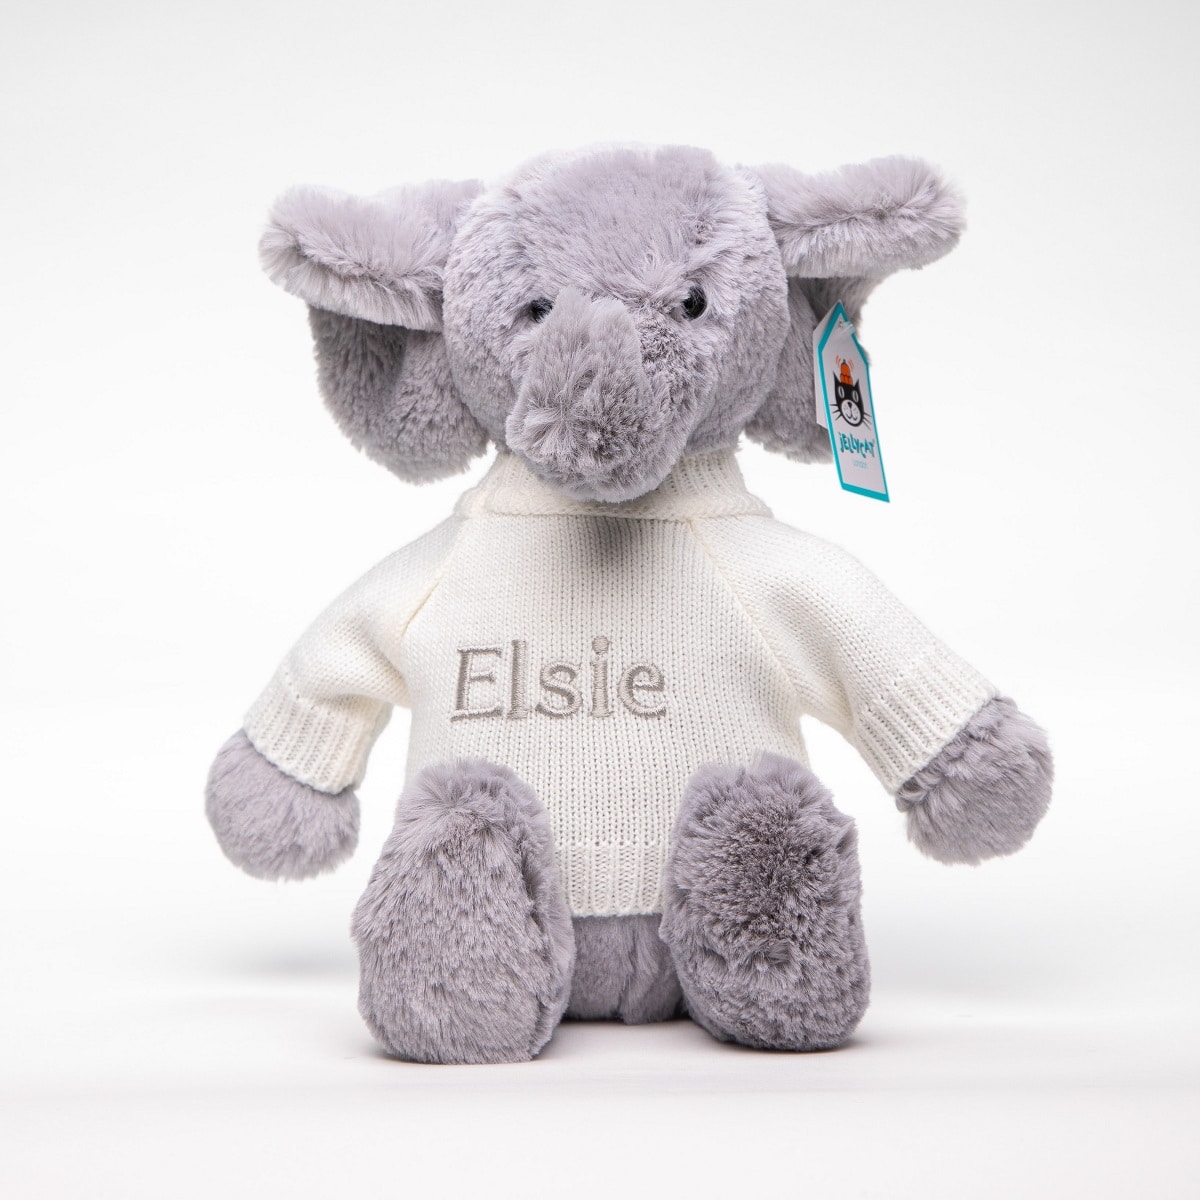 Personalised Jellycat grey bashful elephant soft toy